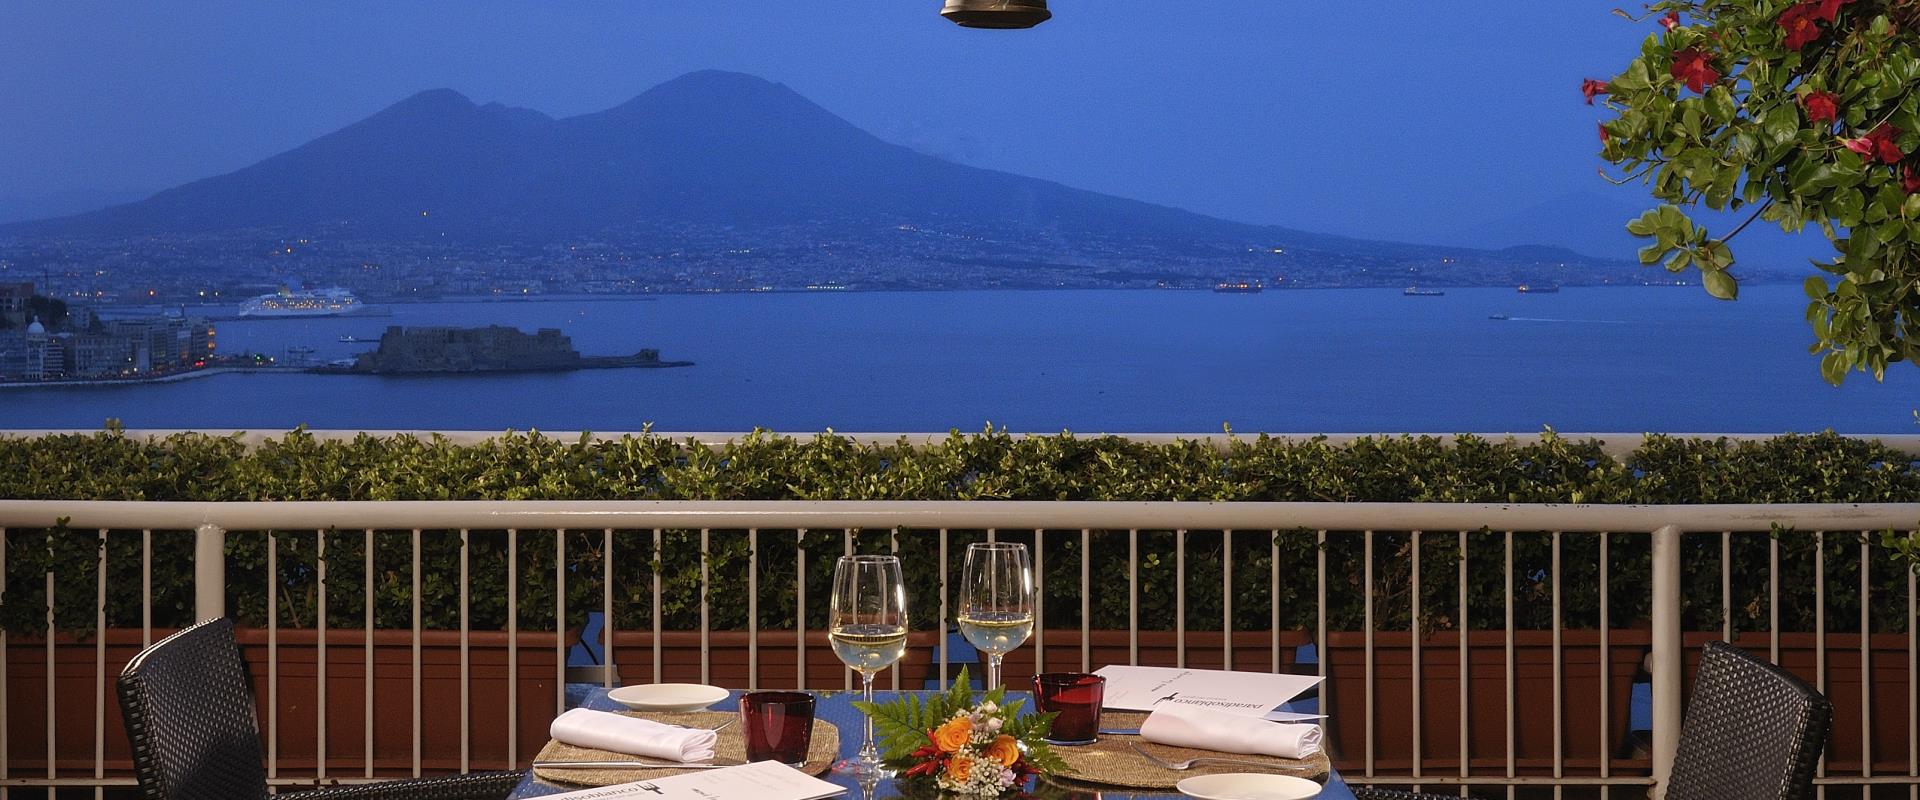 Cena romantica a Napoli con vista sul Golfo